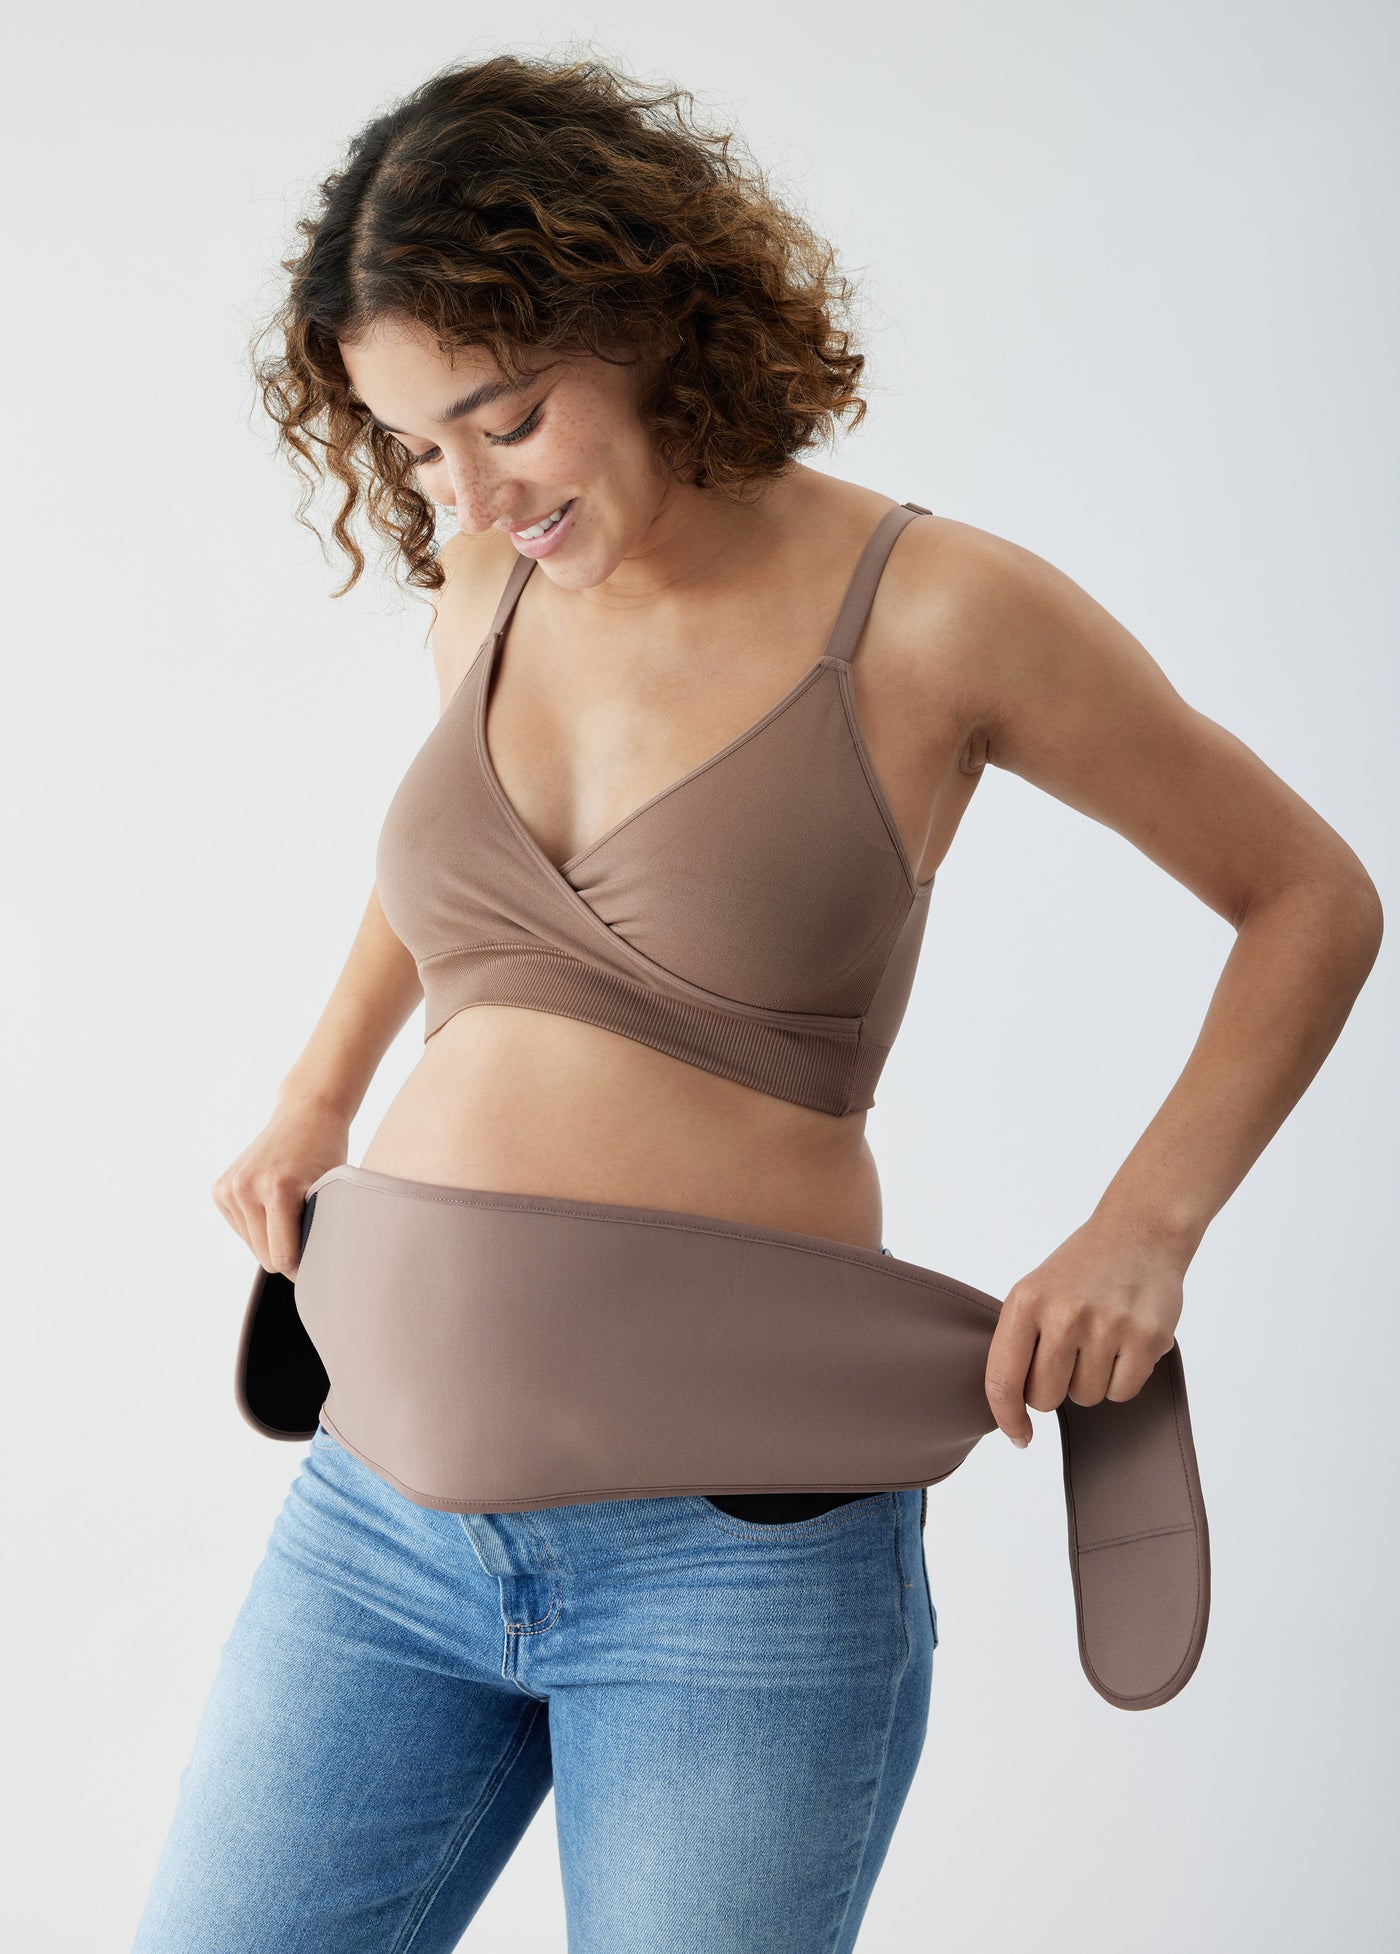 Ingrid & Isabel Maternity Belly Support Belt